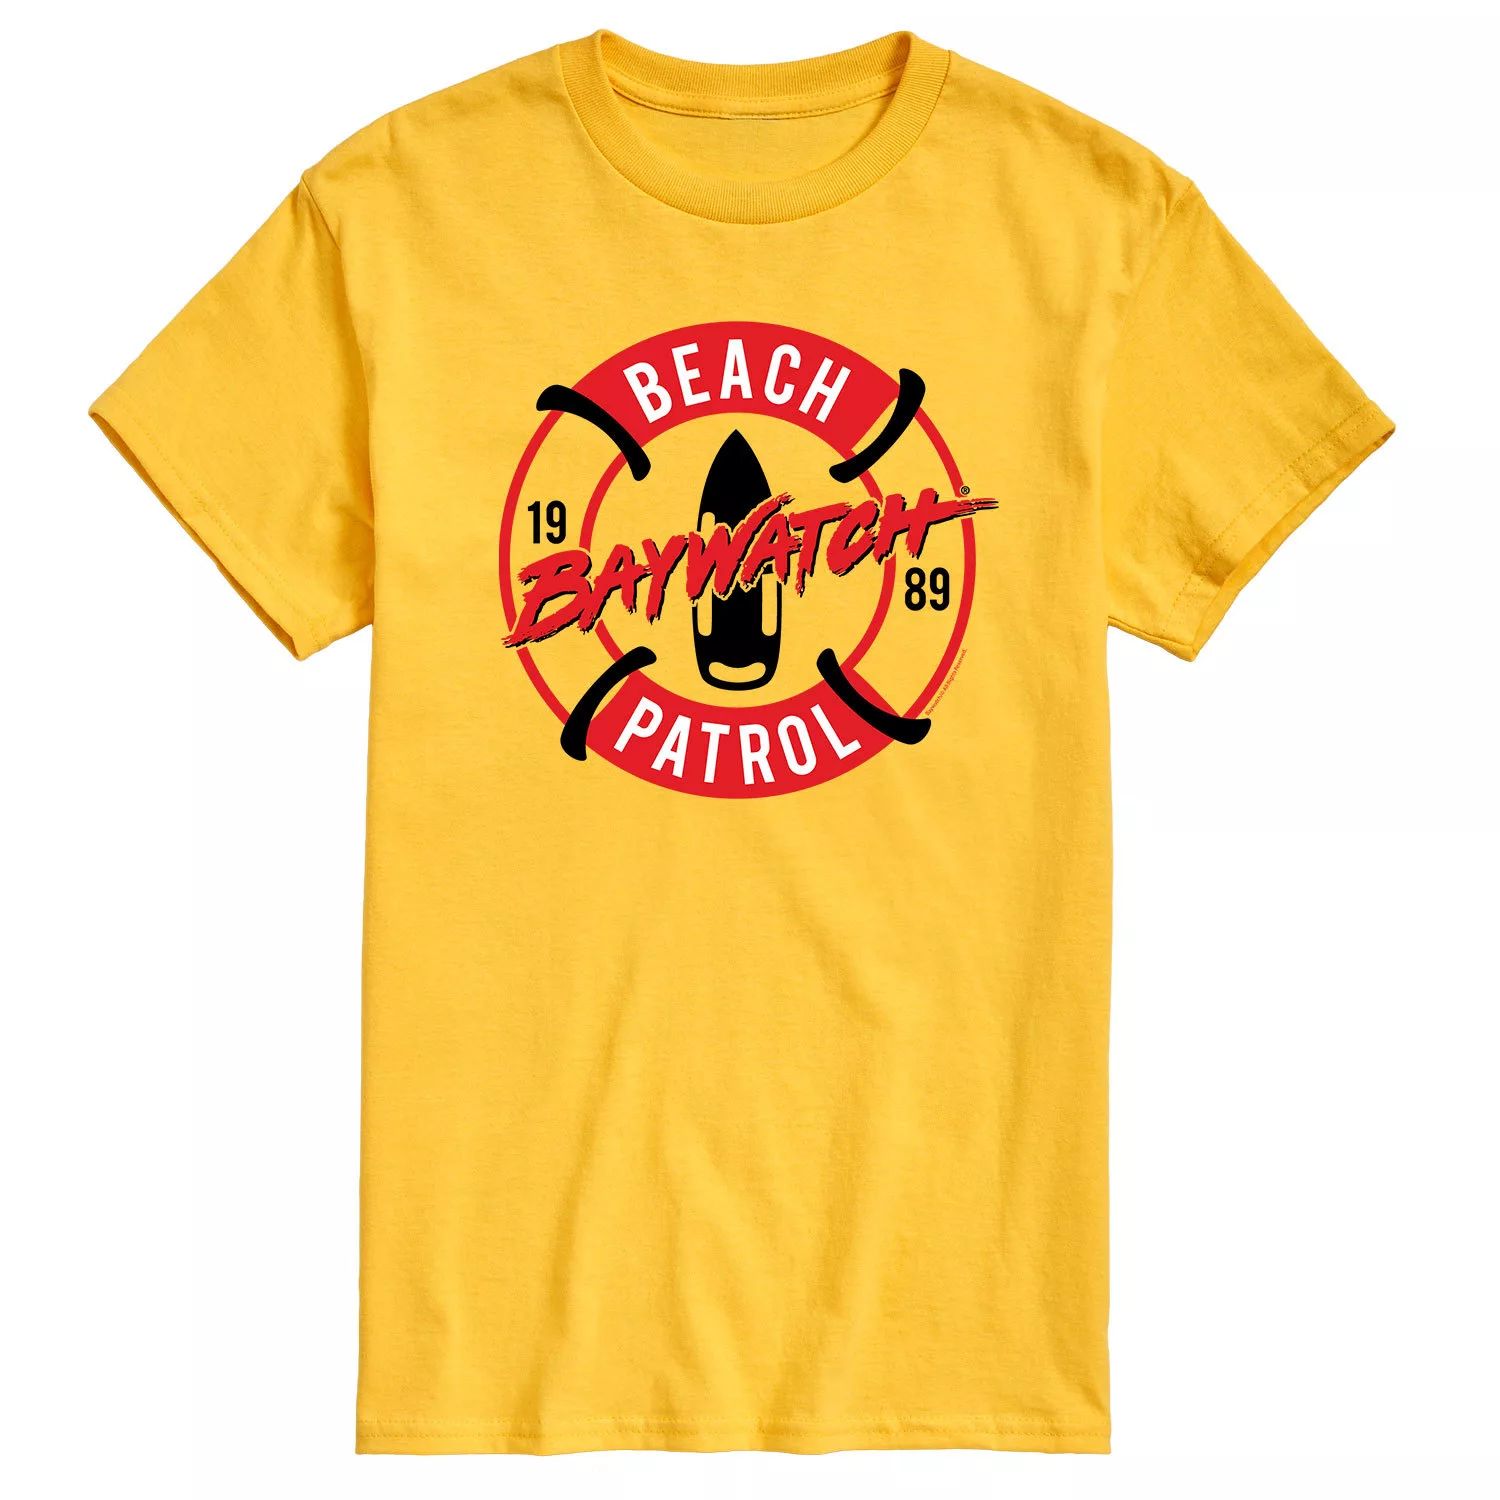 Мужская футболка Baywatch Beach Patrol Licensed Character заказать из за границы с доставкой в 